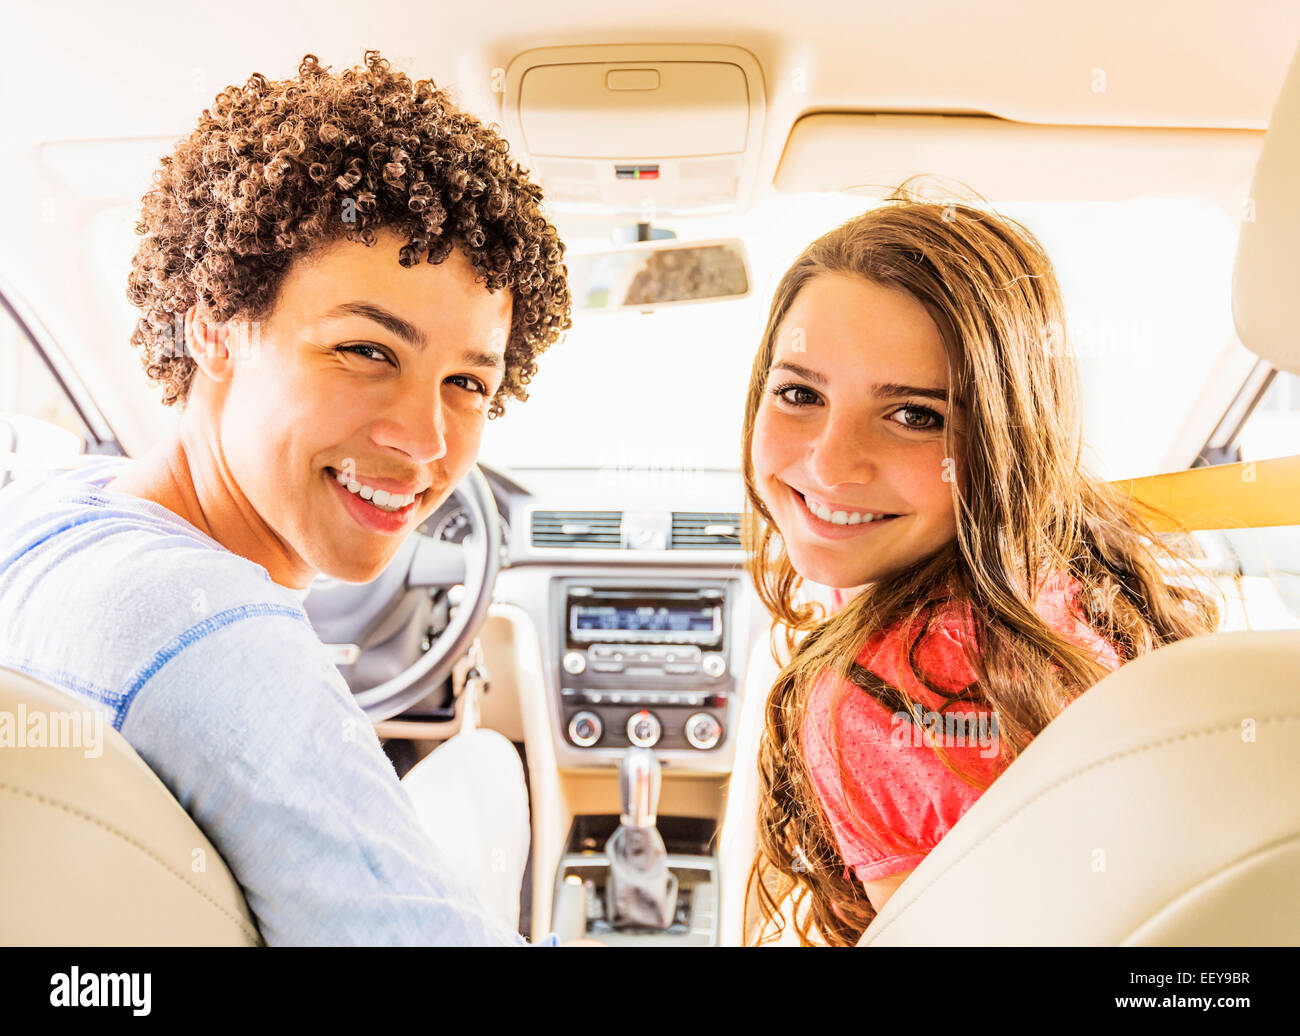 Porträt des jungen Mannes und Teenager-Mädchen (14-15) im Auto Stockfoto